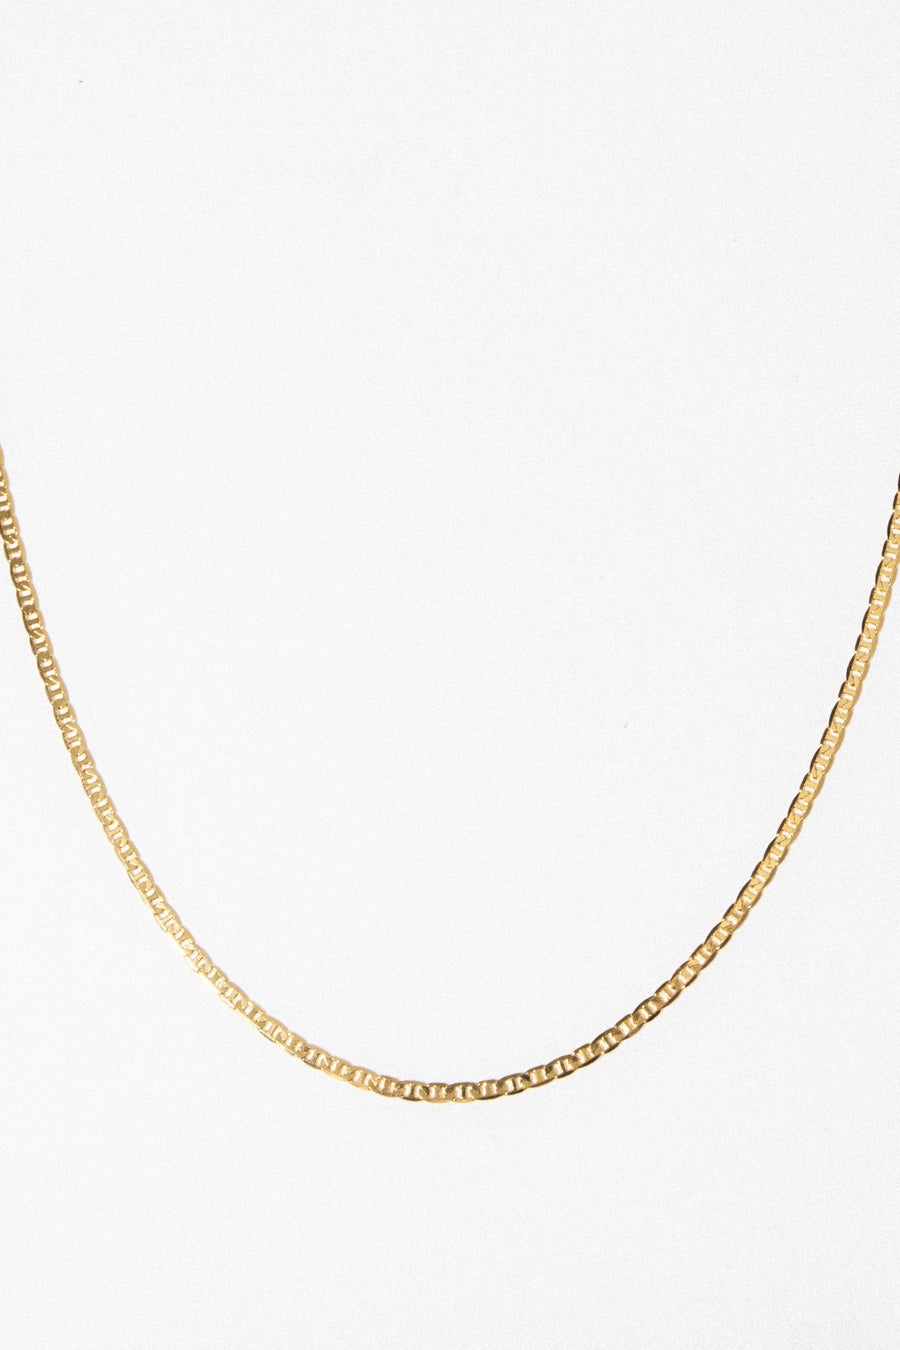 Dona Italia Jewelry Gold / 20 Inches Guccio Necklace